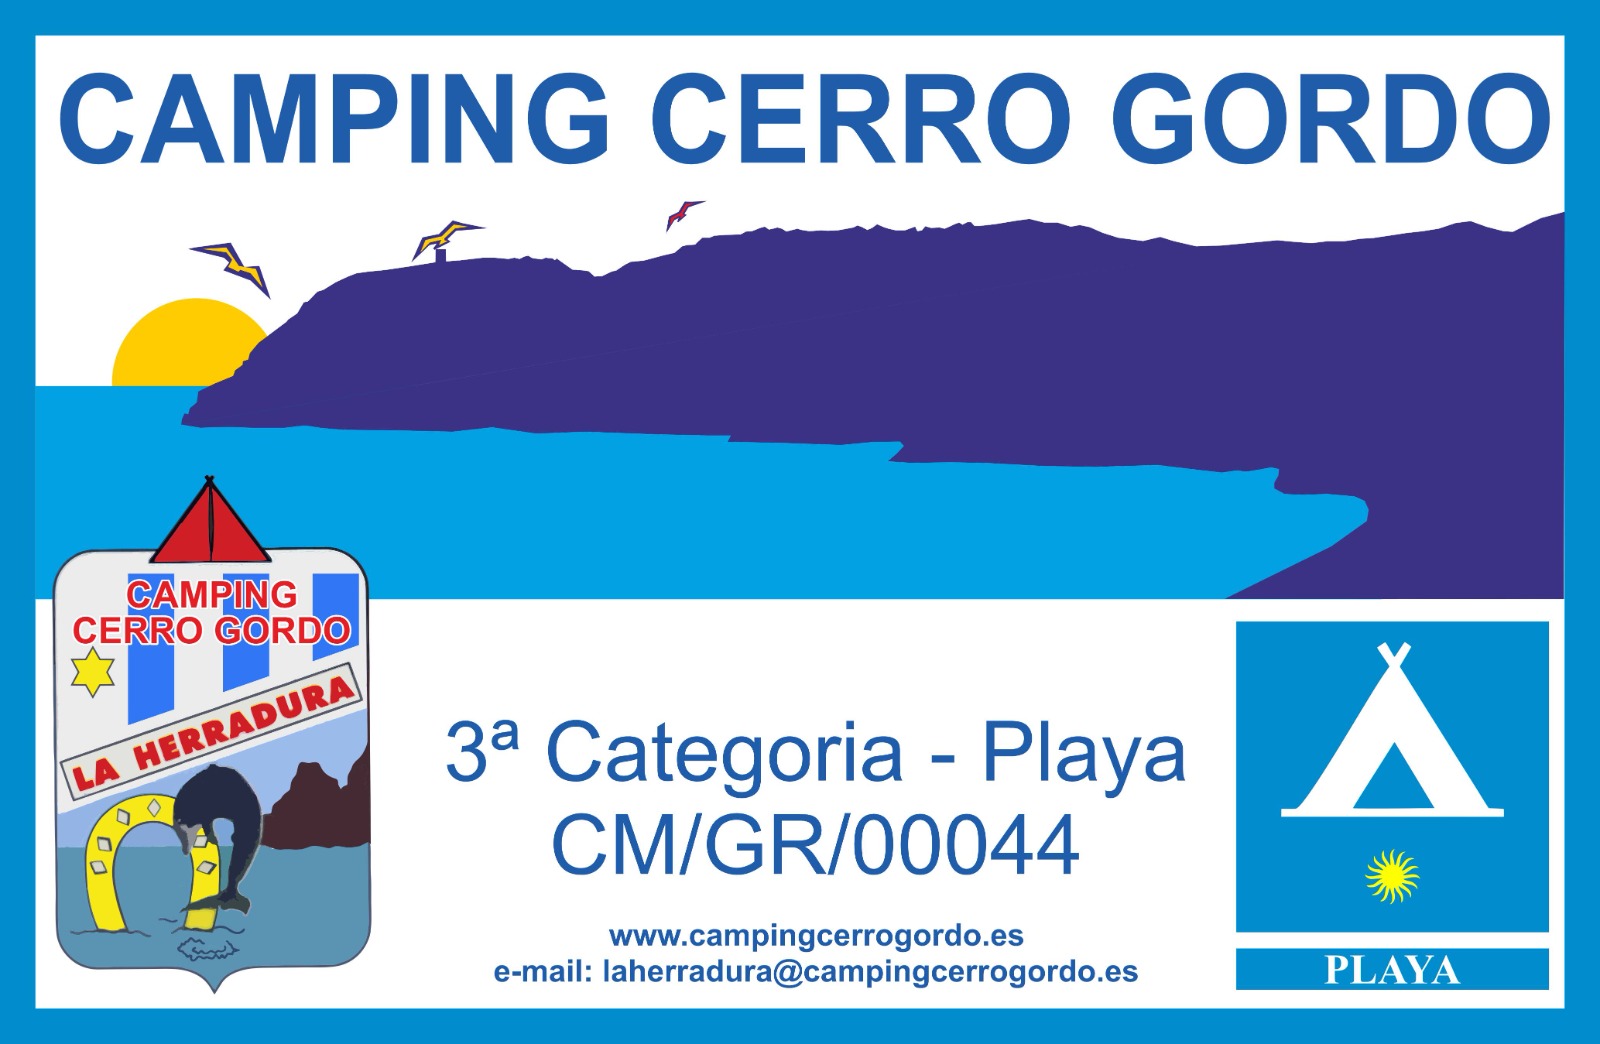 Camping Cerro Gordo